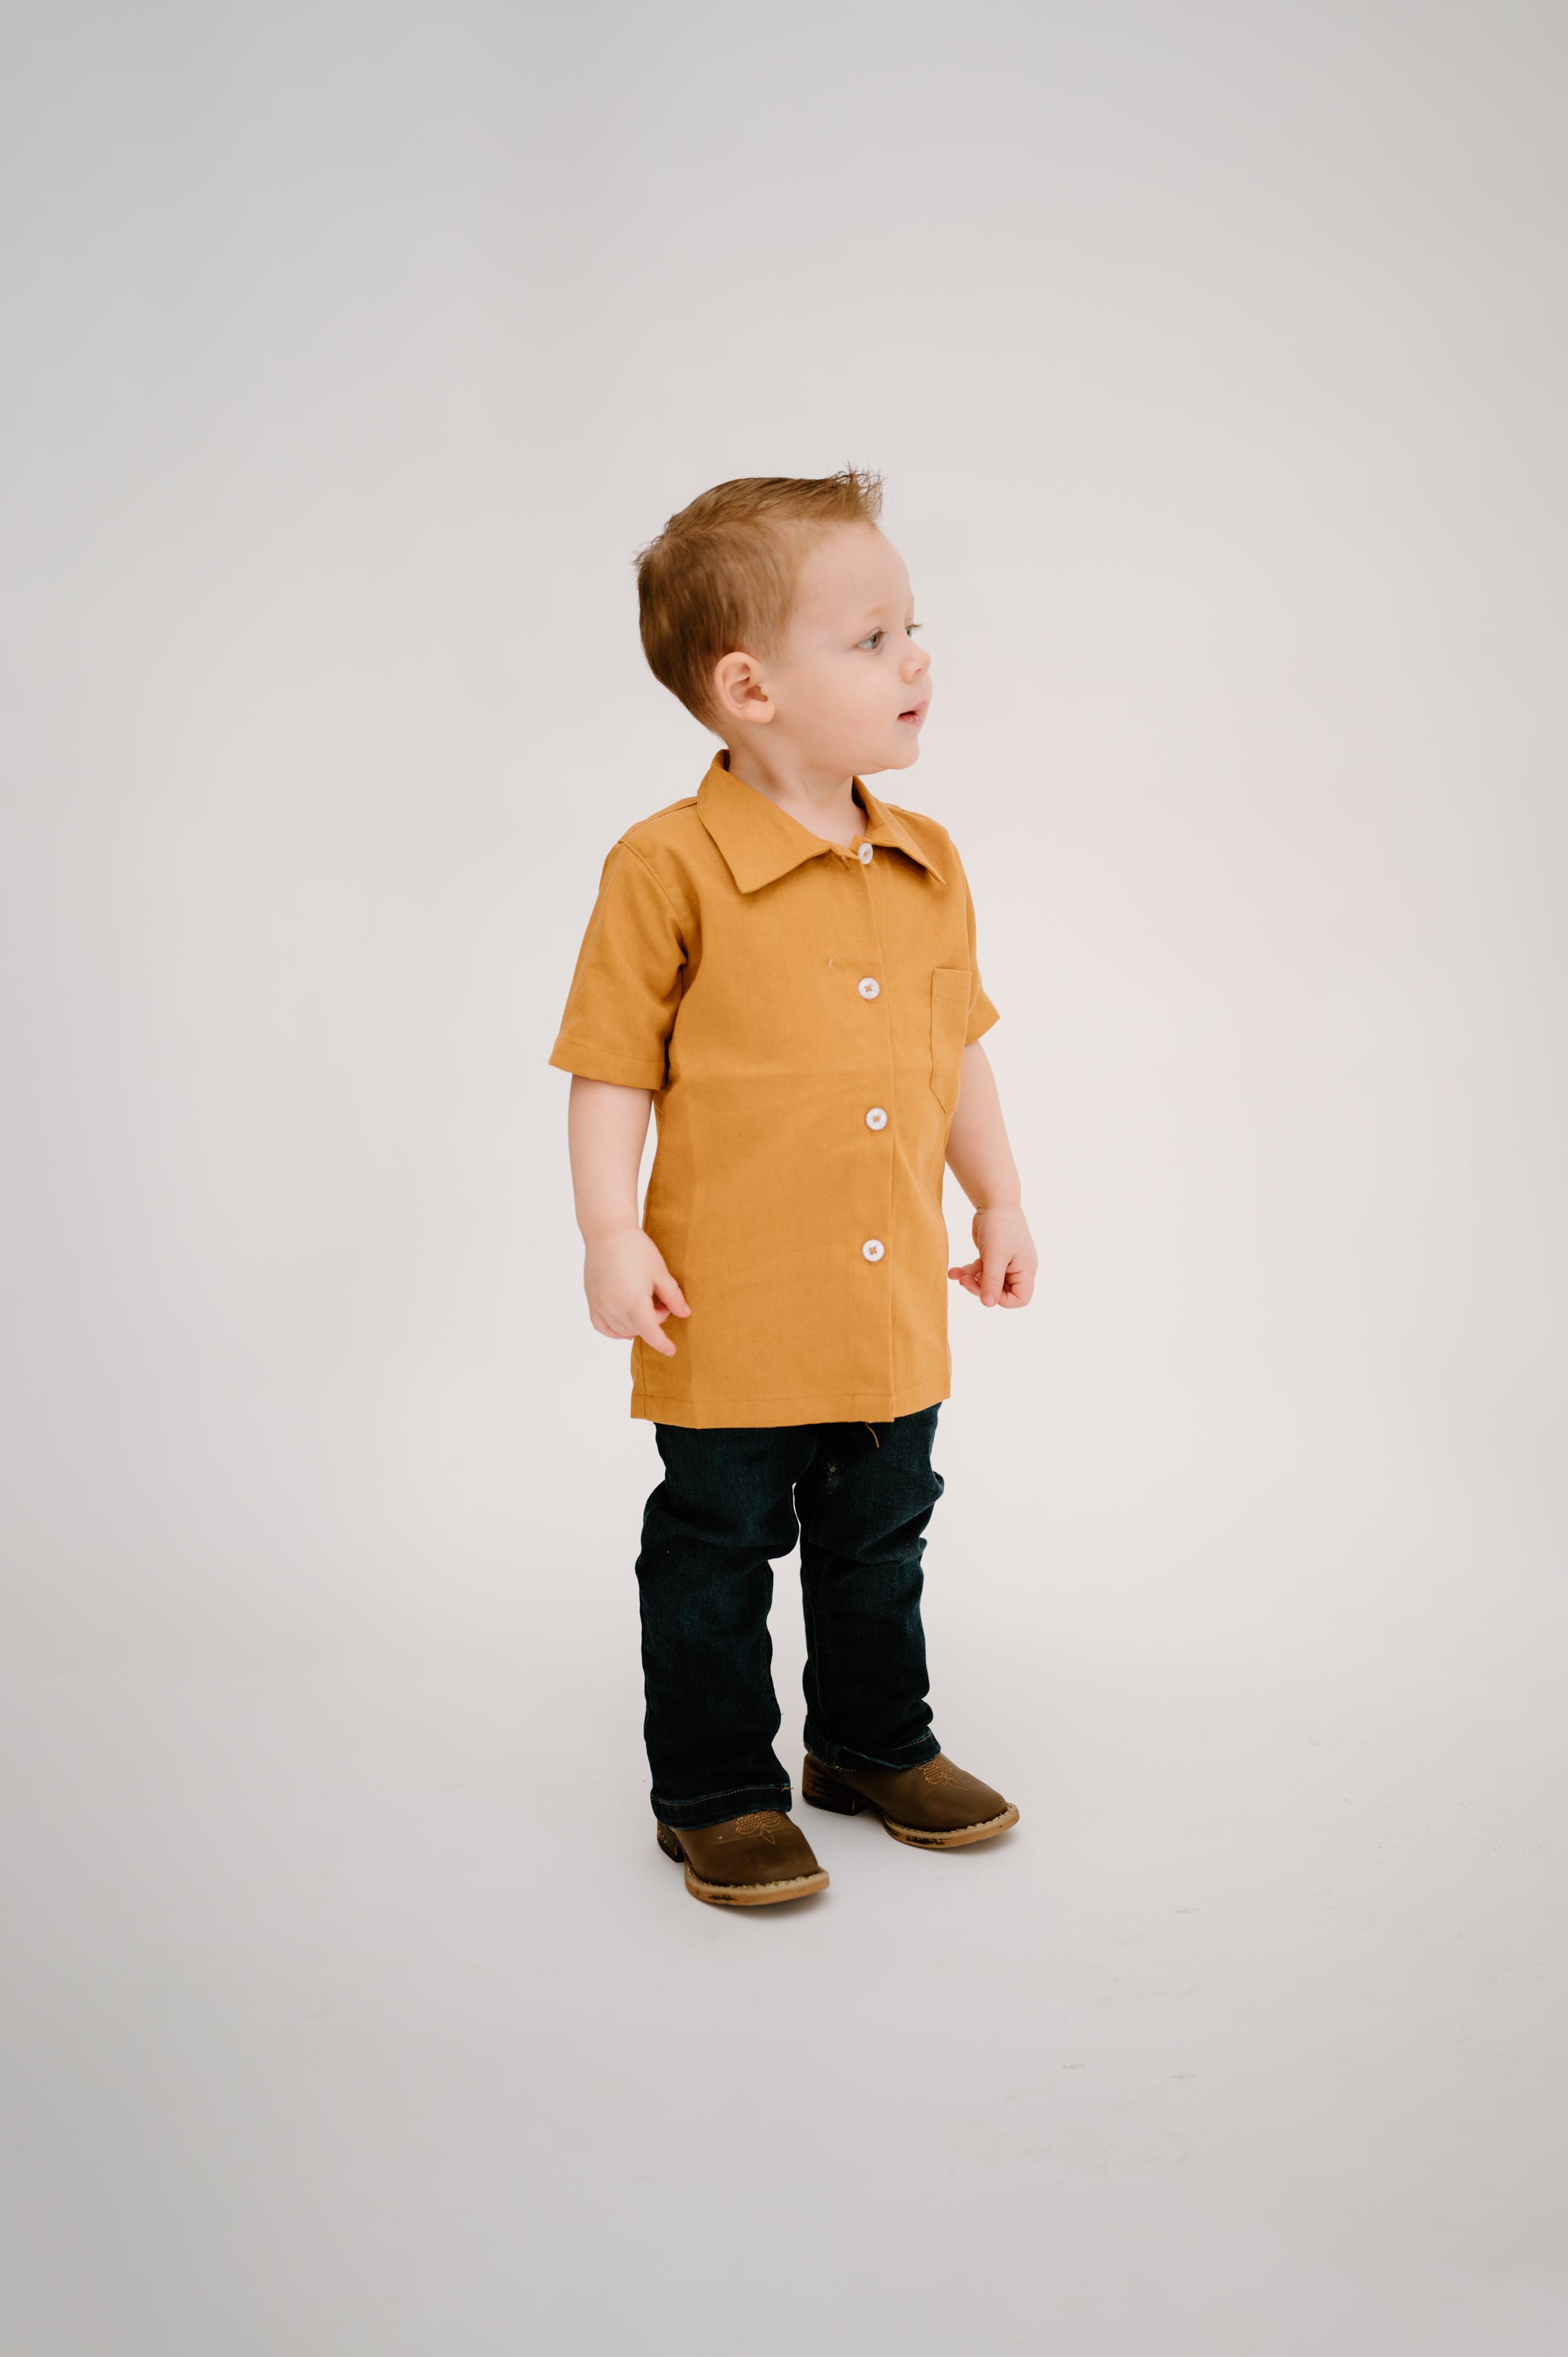 Everett shirt for kids in mustard